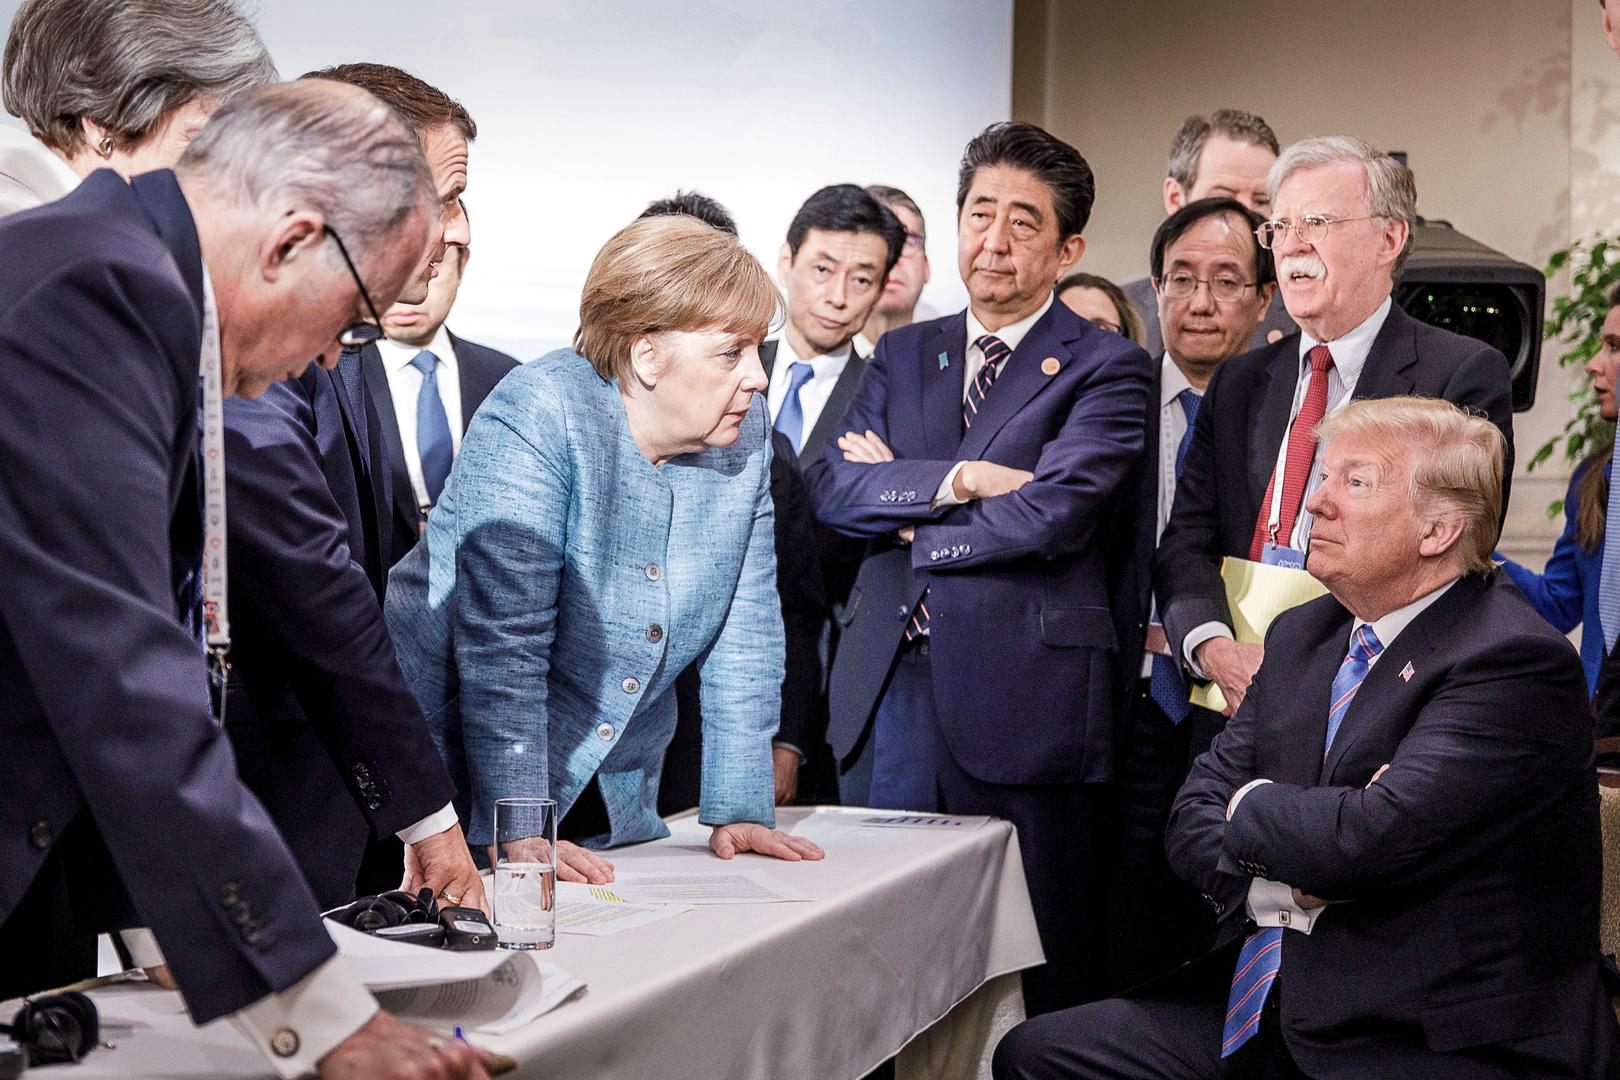 Ovu fotografiju s G7 svjetski mediji nazivaju “stoljetnom” – svaki pogled i svako lice ima svoju funkciju